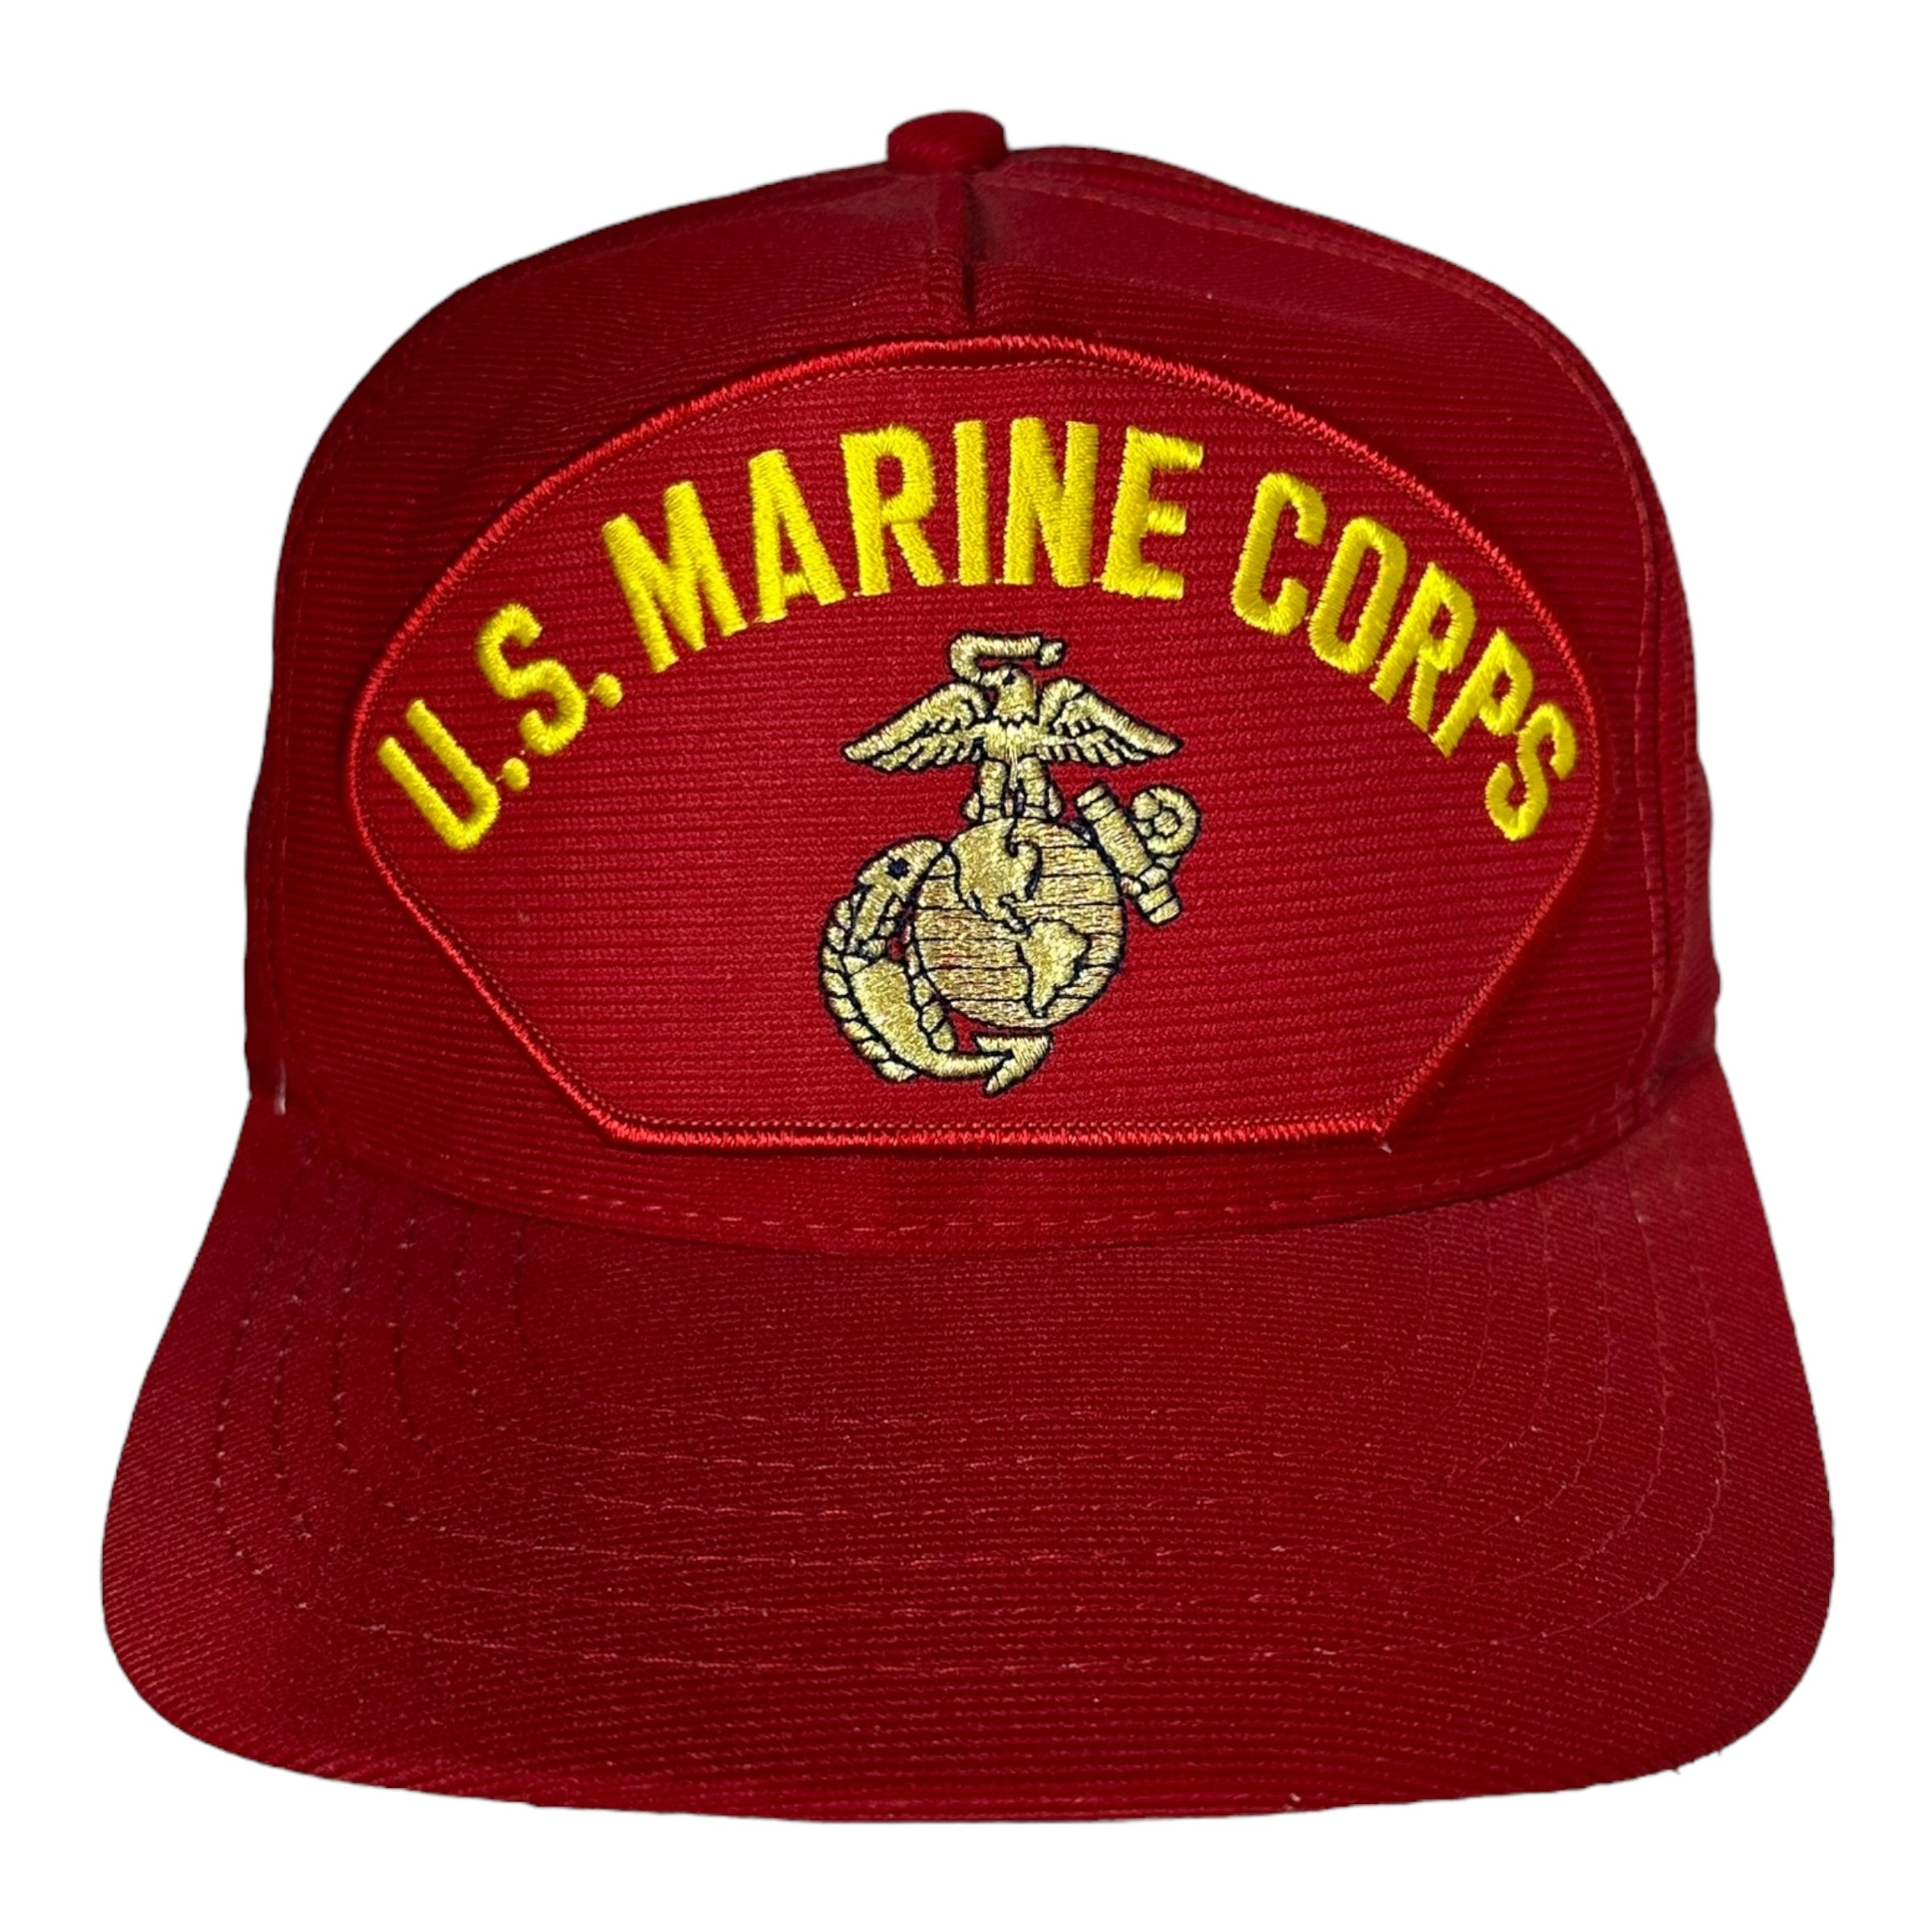 Vintage U.S. Marine Corps Snapback